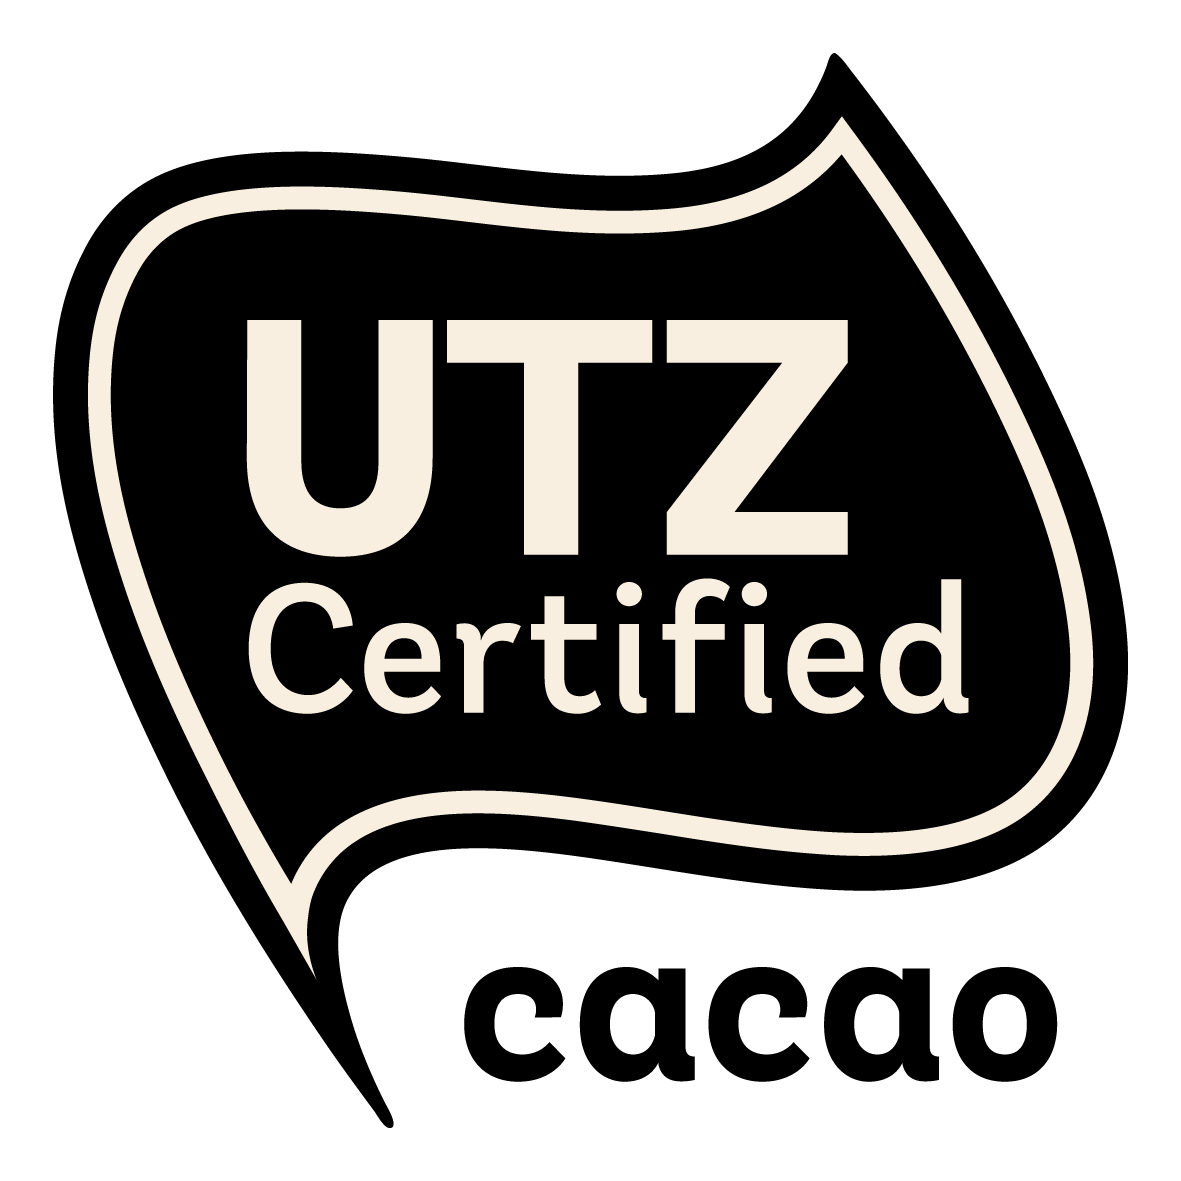 UTZ Certified Cocoa - UTZ Certified Cocoa